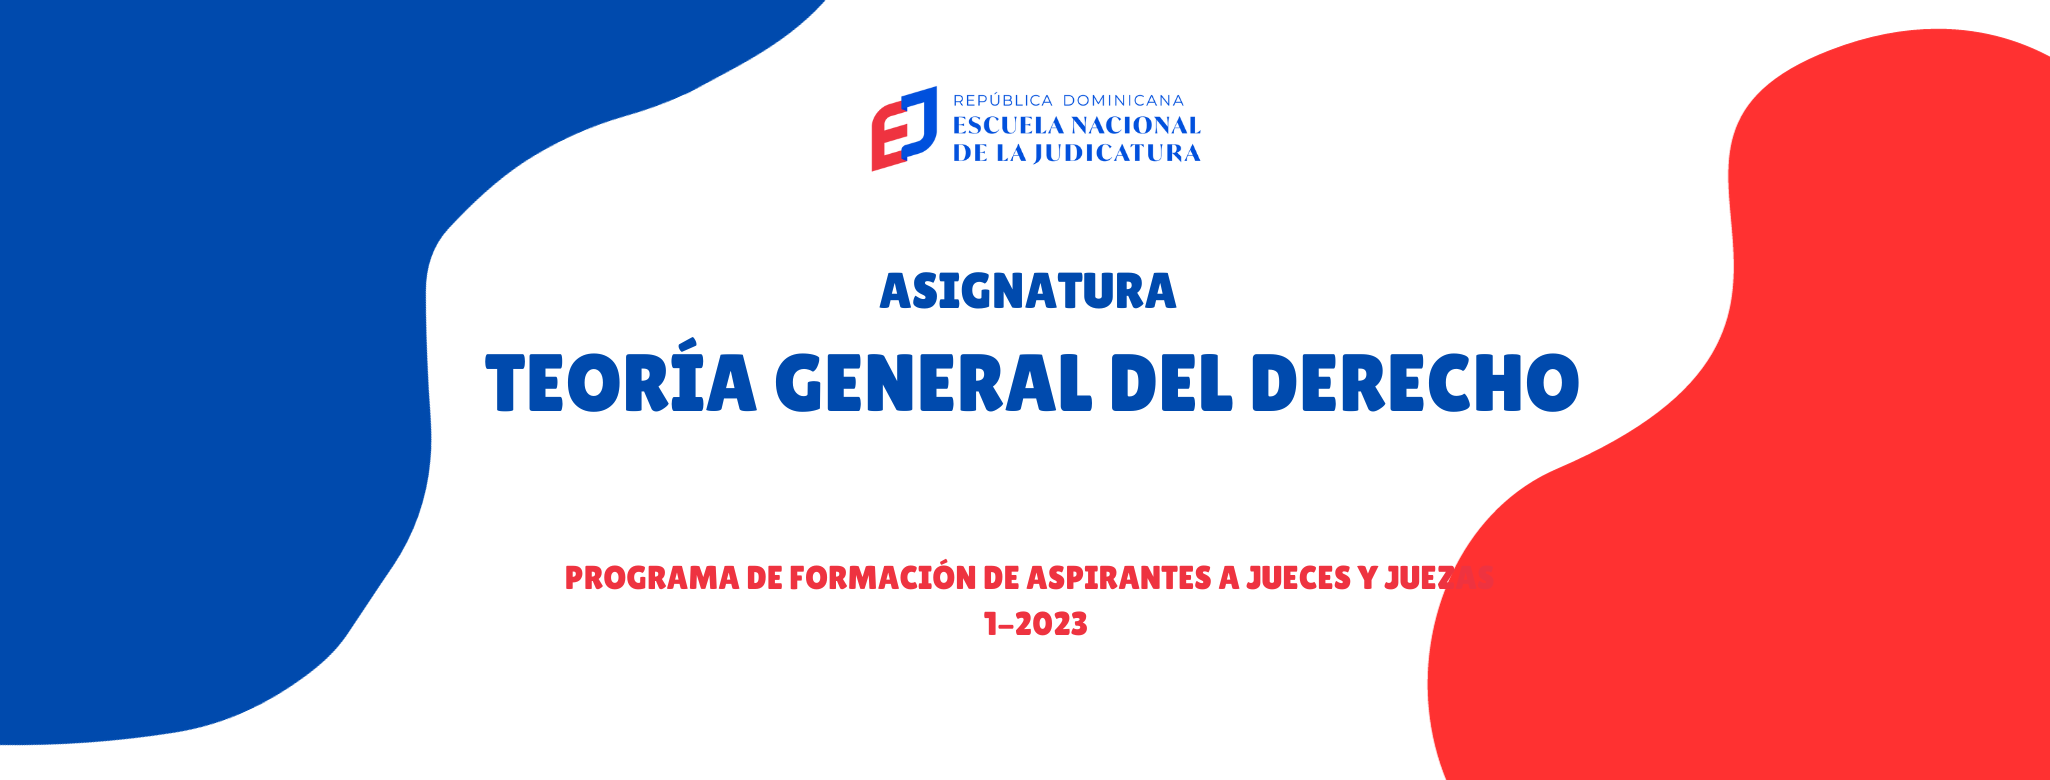 MDJ-200-23-01 Asignatura Teoría General del Derecho (AJ 1-2023)